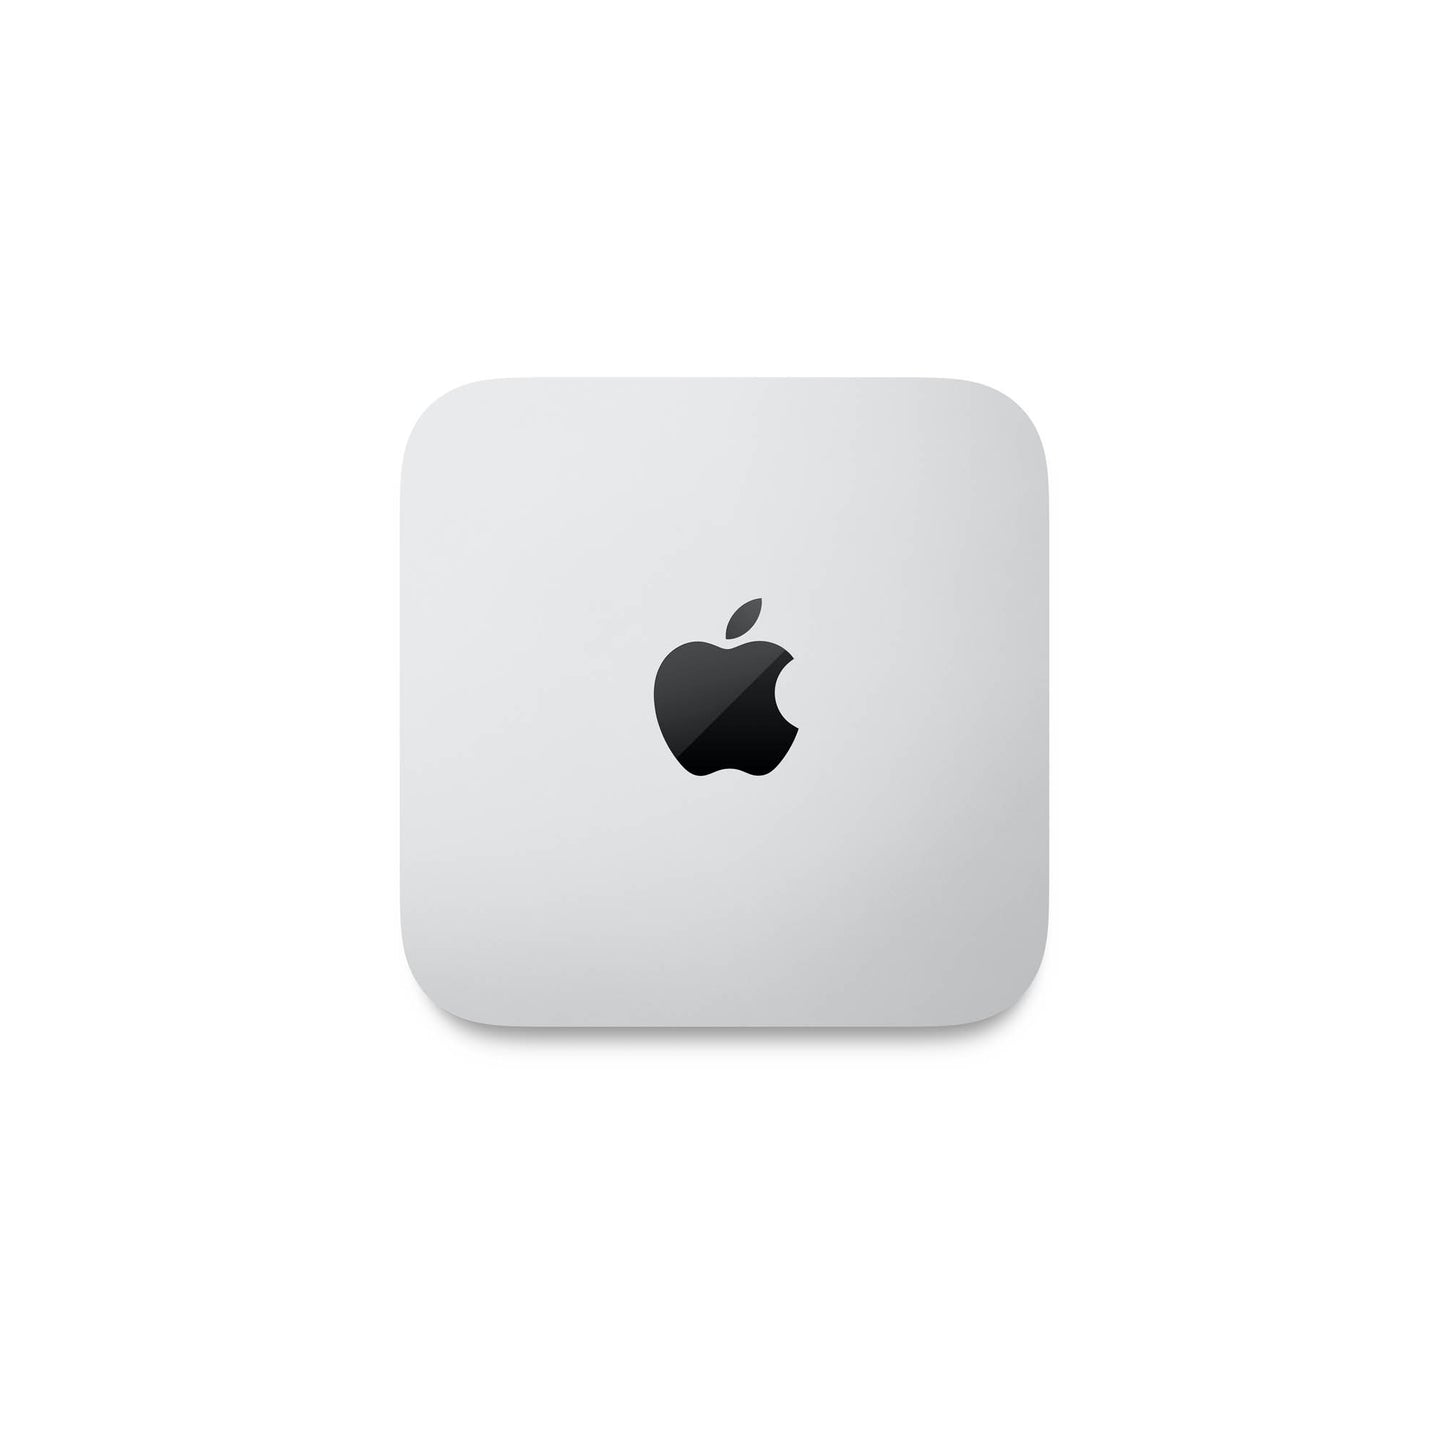 "Mac mini: Apple M2 chip with 8-core CPU and 10-core GPU, 256GB SSD"